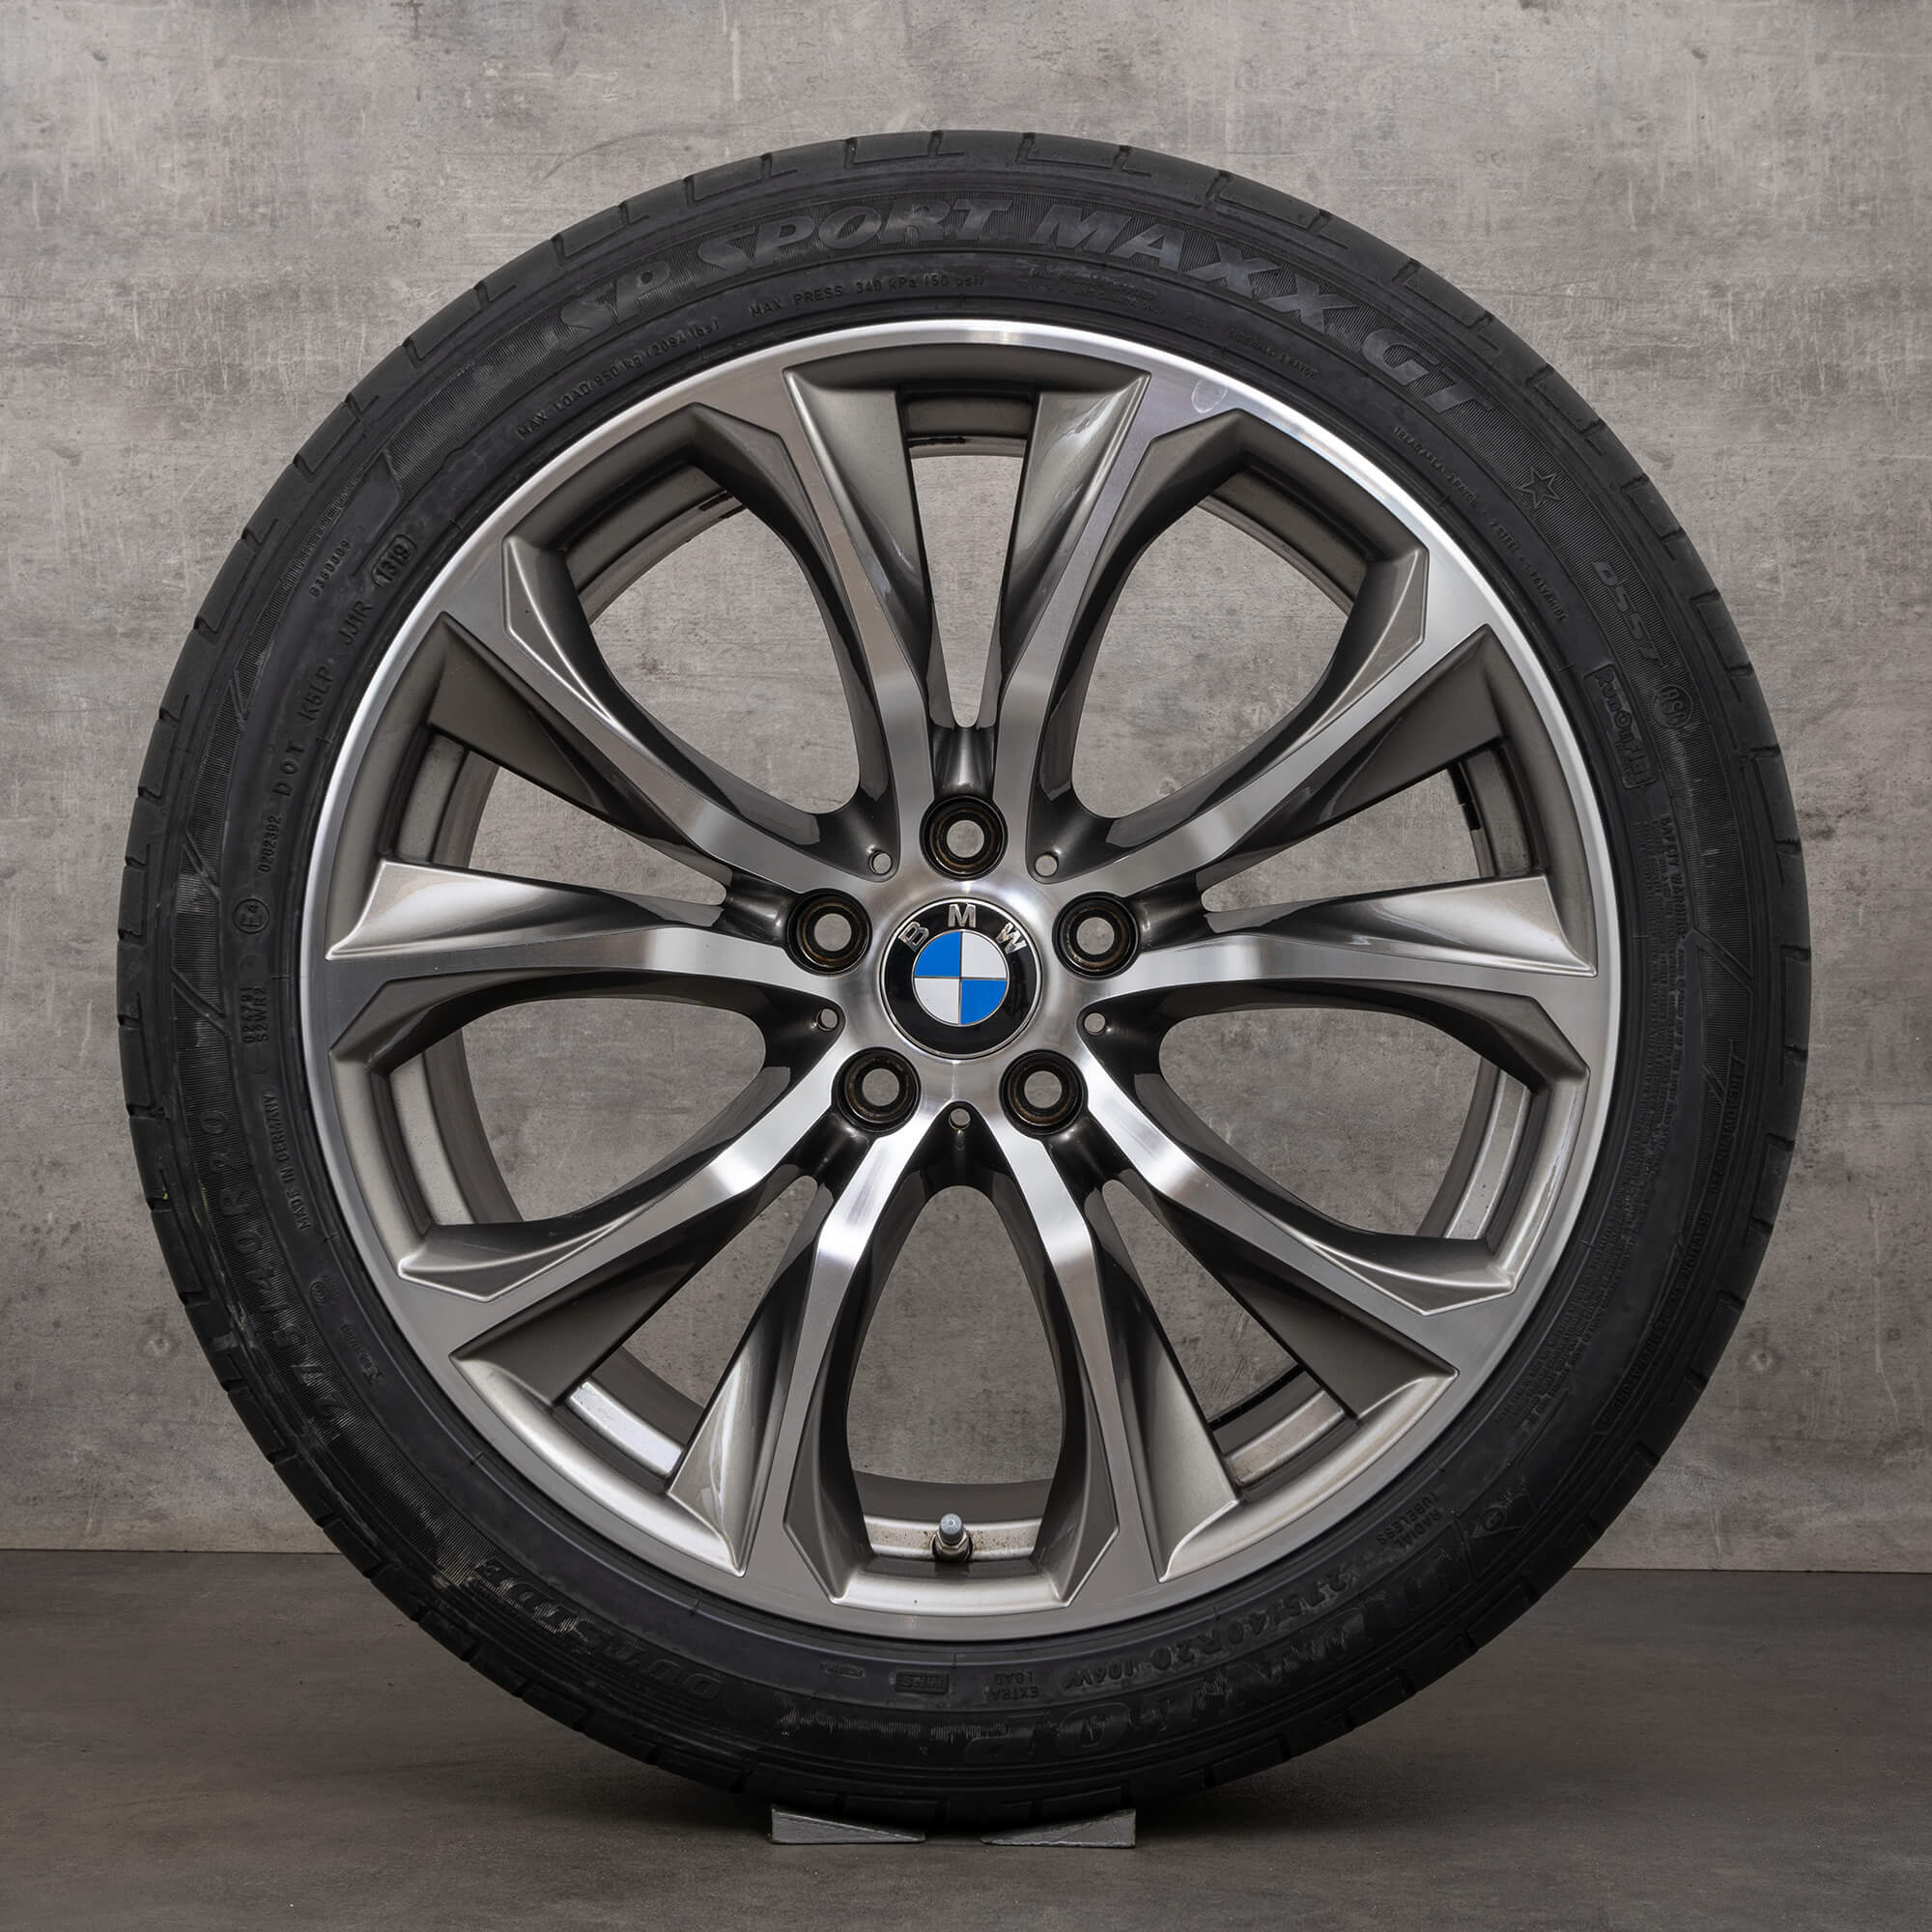 BMW 20 inch alloy rims X5 F15 E70 X6 F16 summer wheels tires